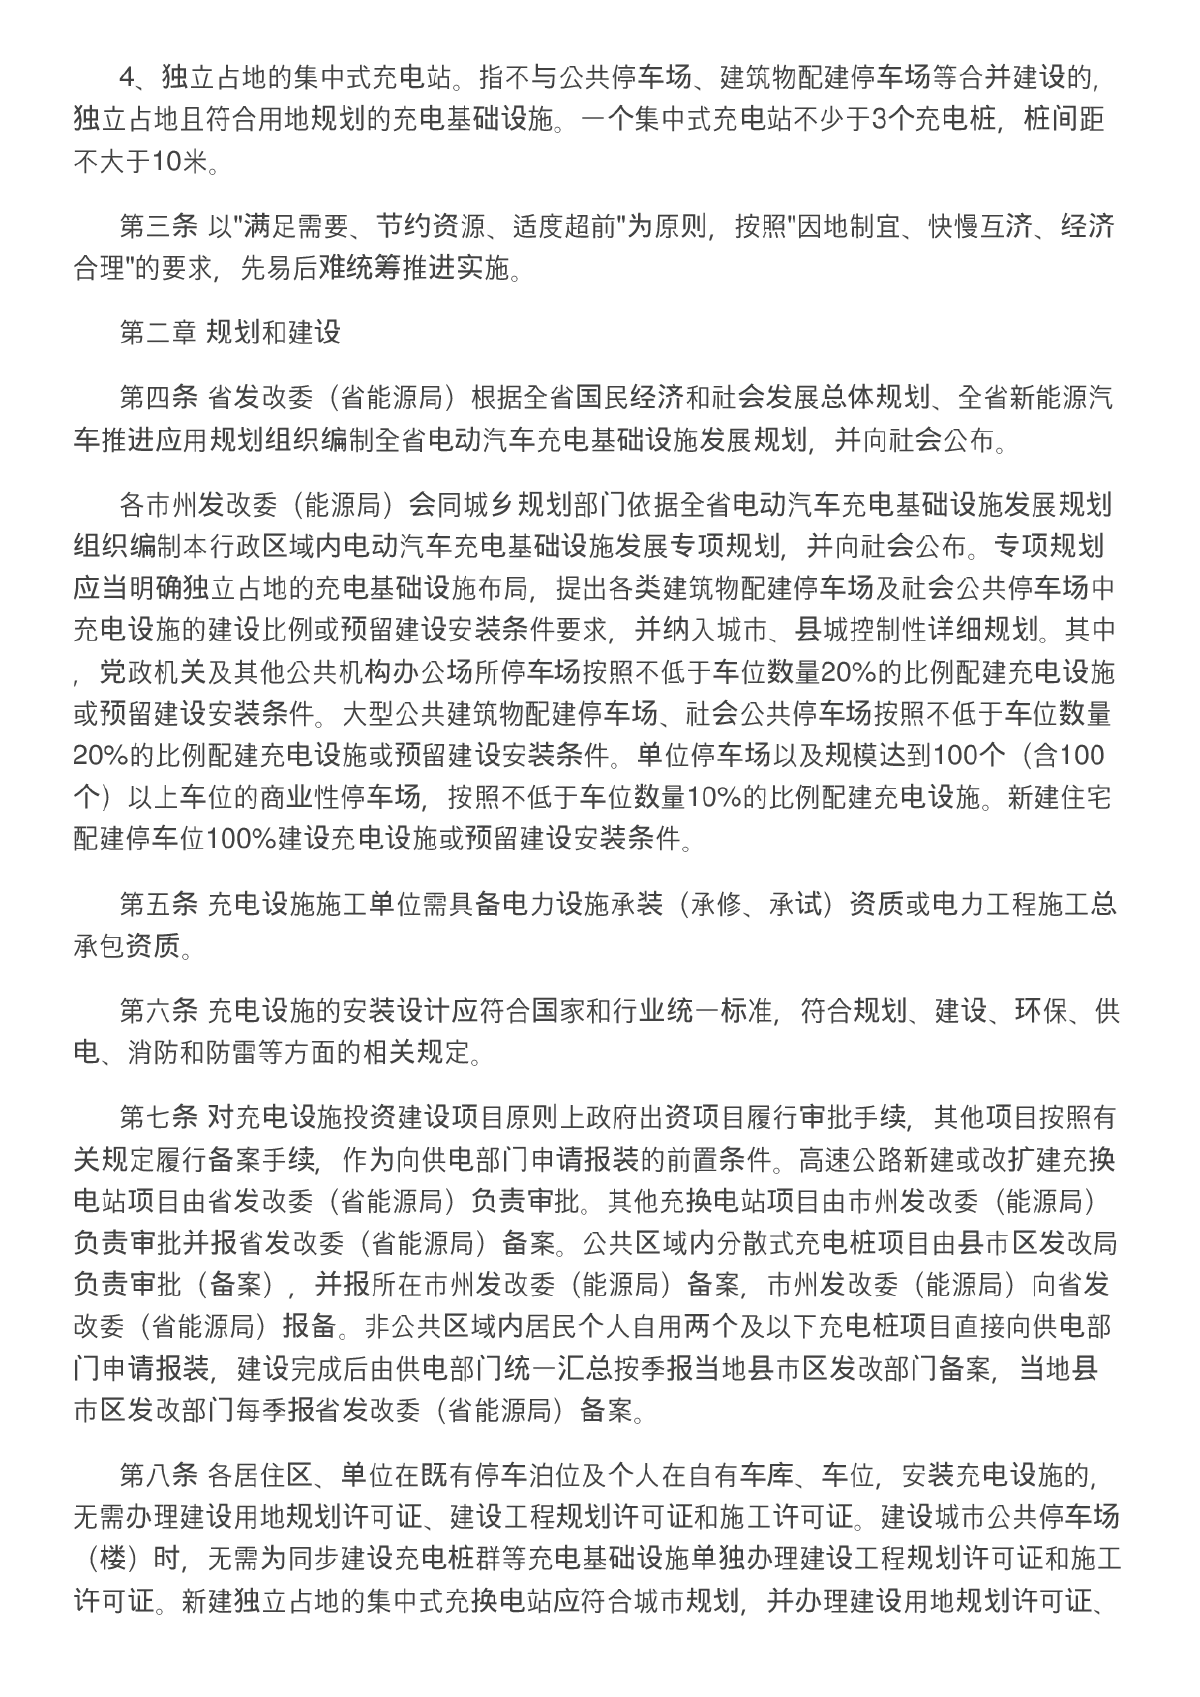 湖南省电动汽车充电基础设施建设与运营管理暂行办法-图二